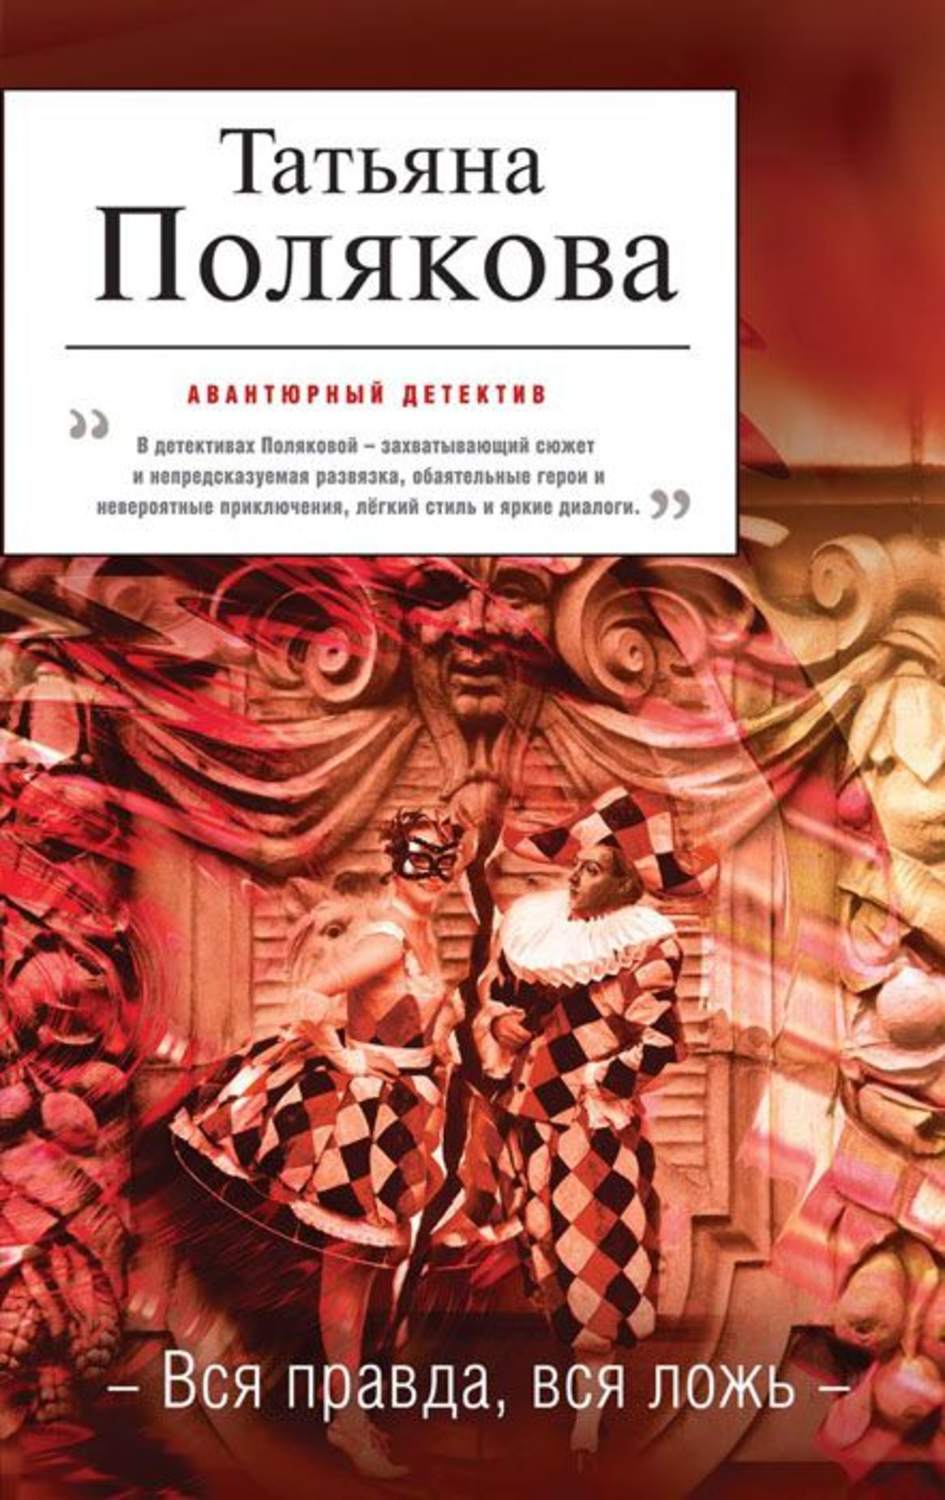 Скачать бесплатно книги поляковой для электронной книги